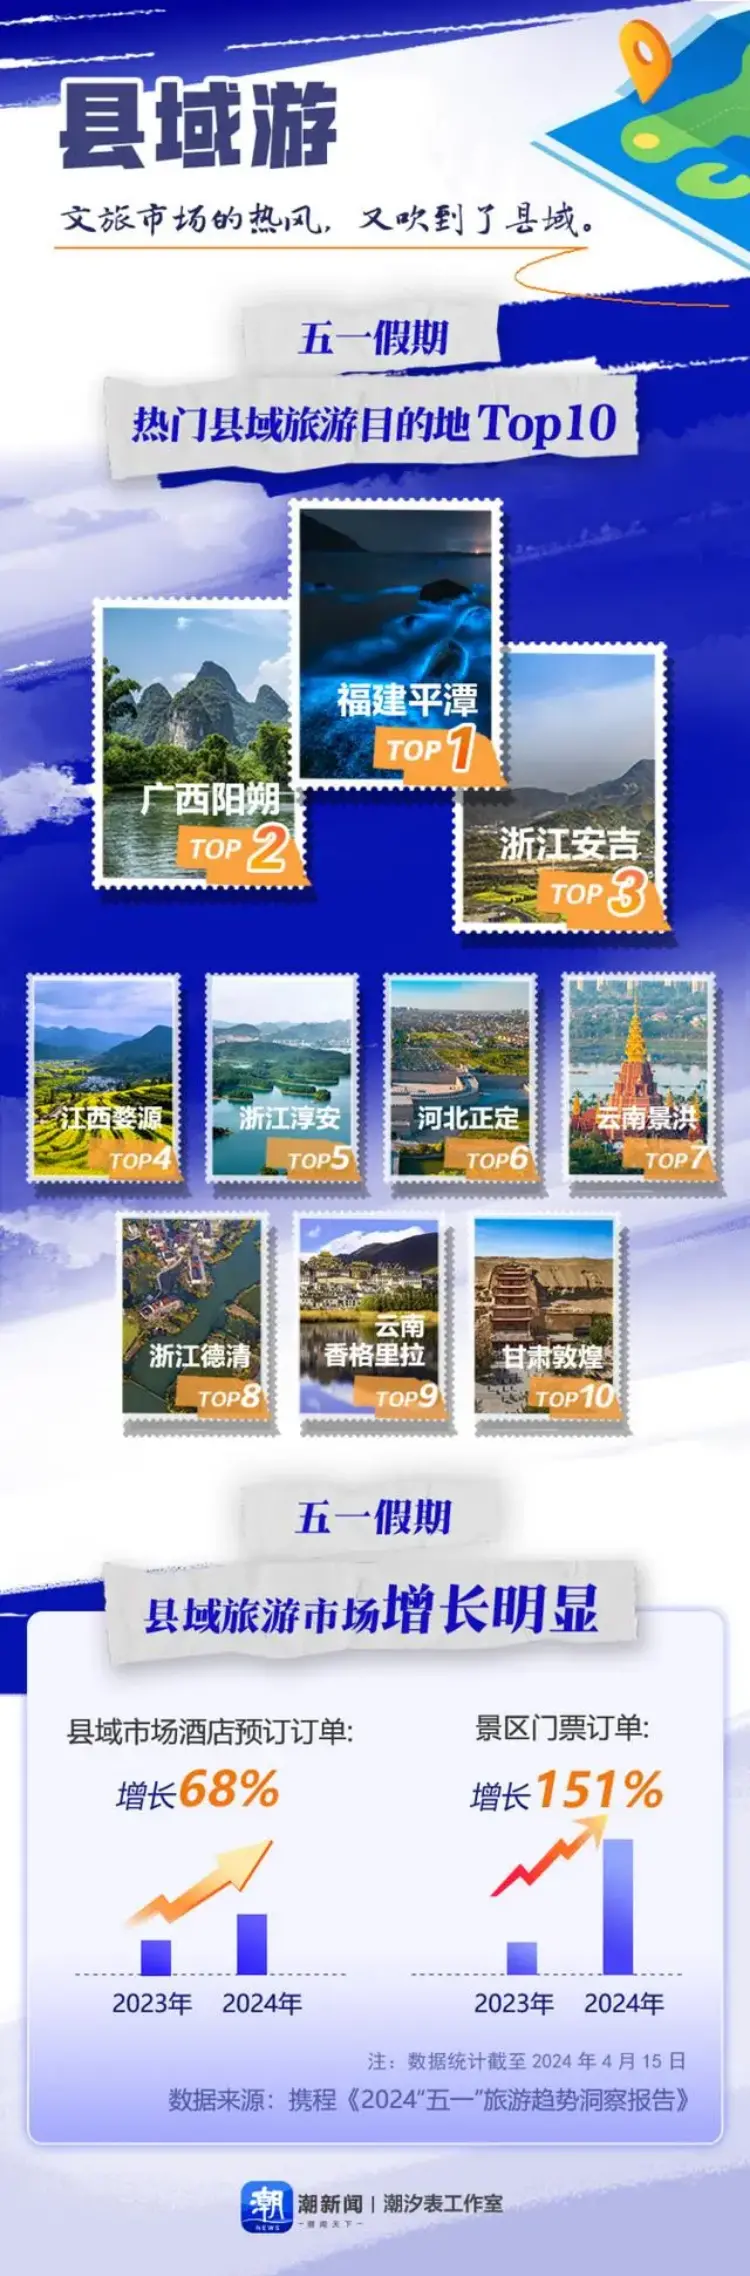 五一假期县域旅游目的地TOP10。潮新闻